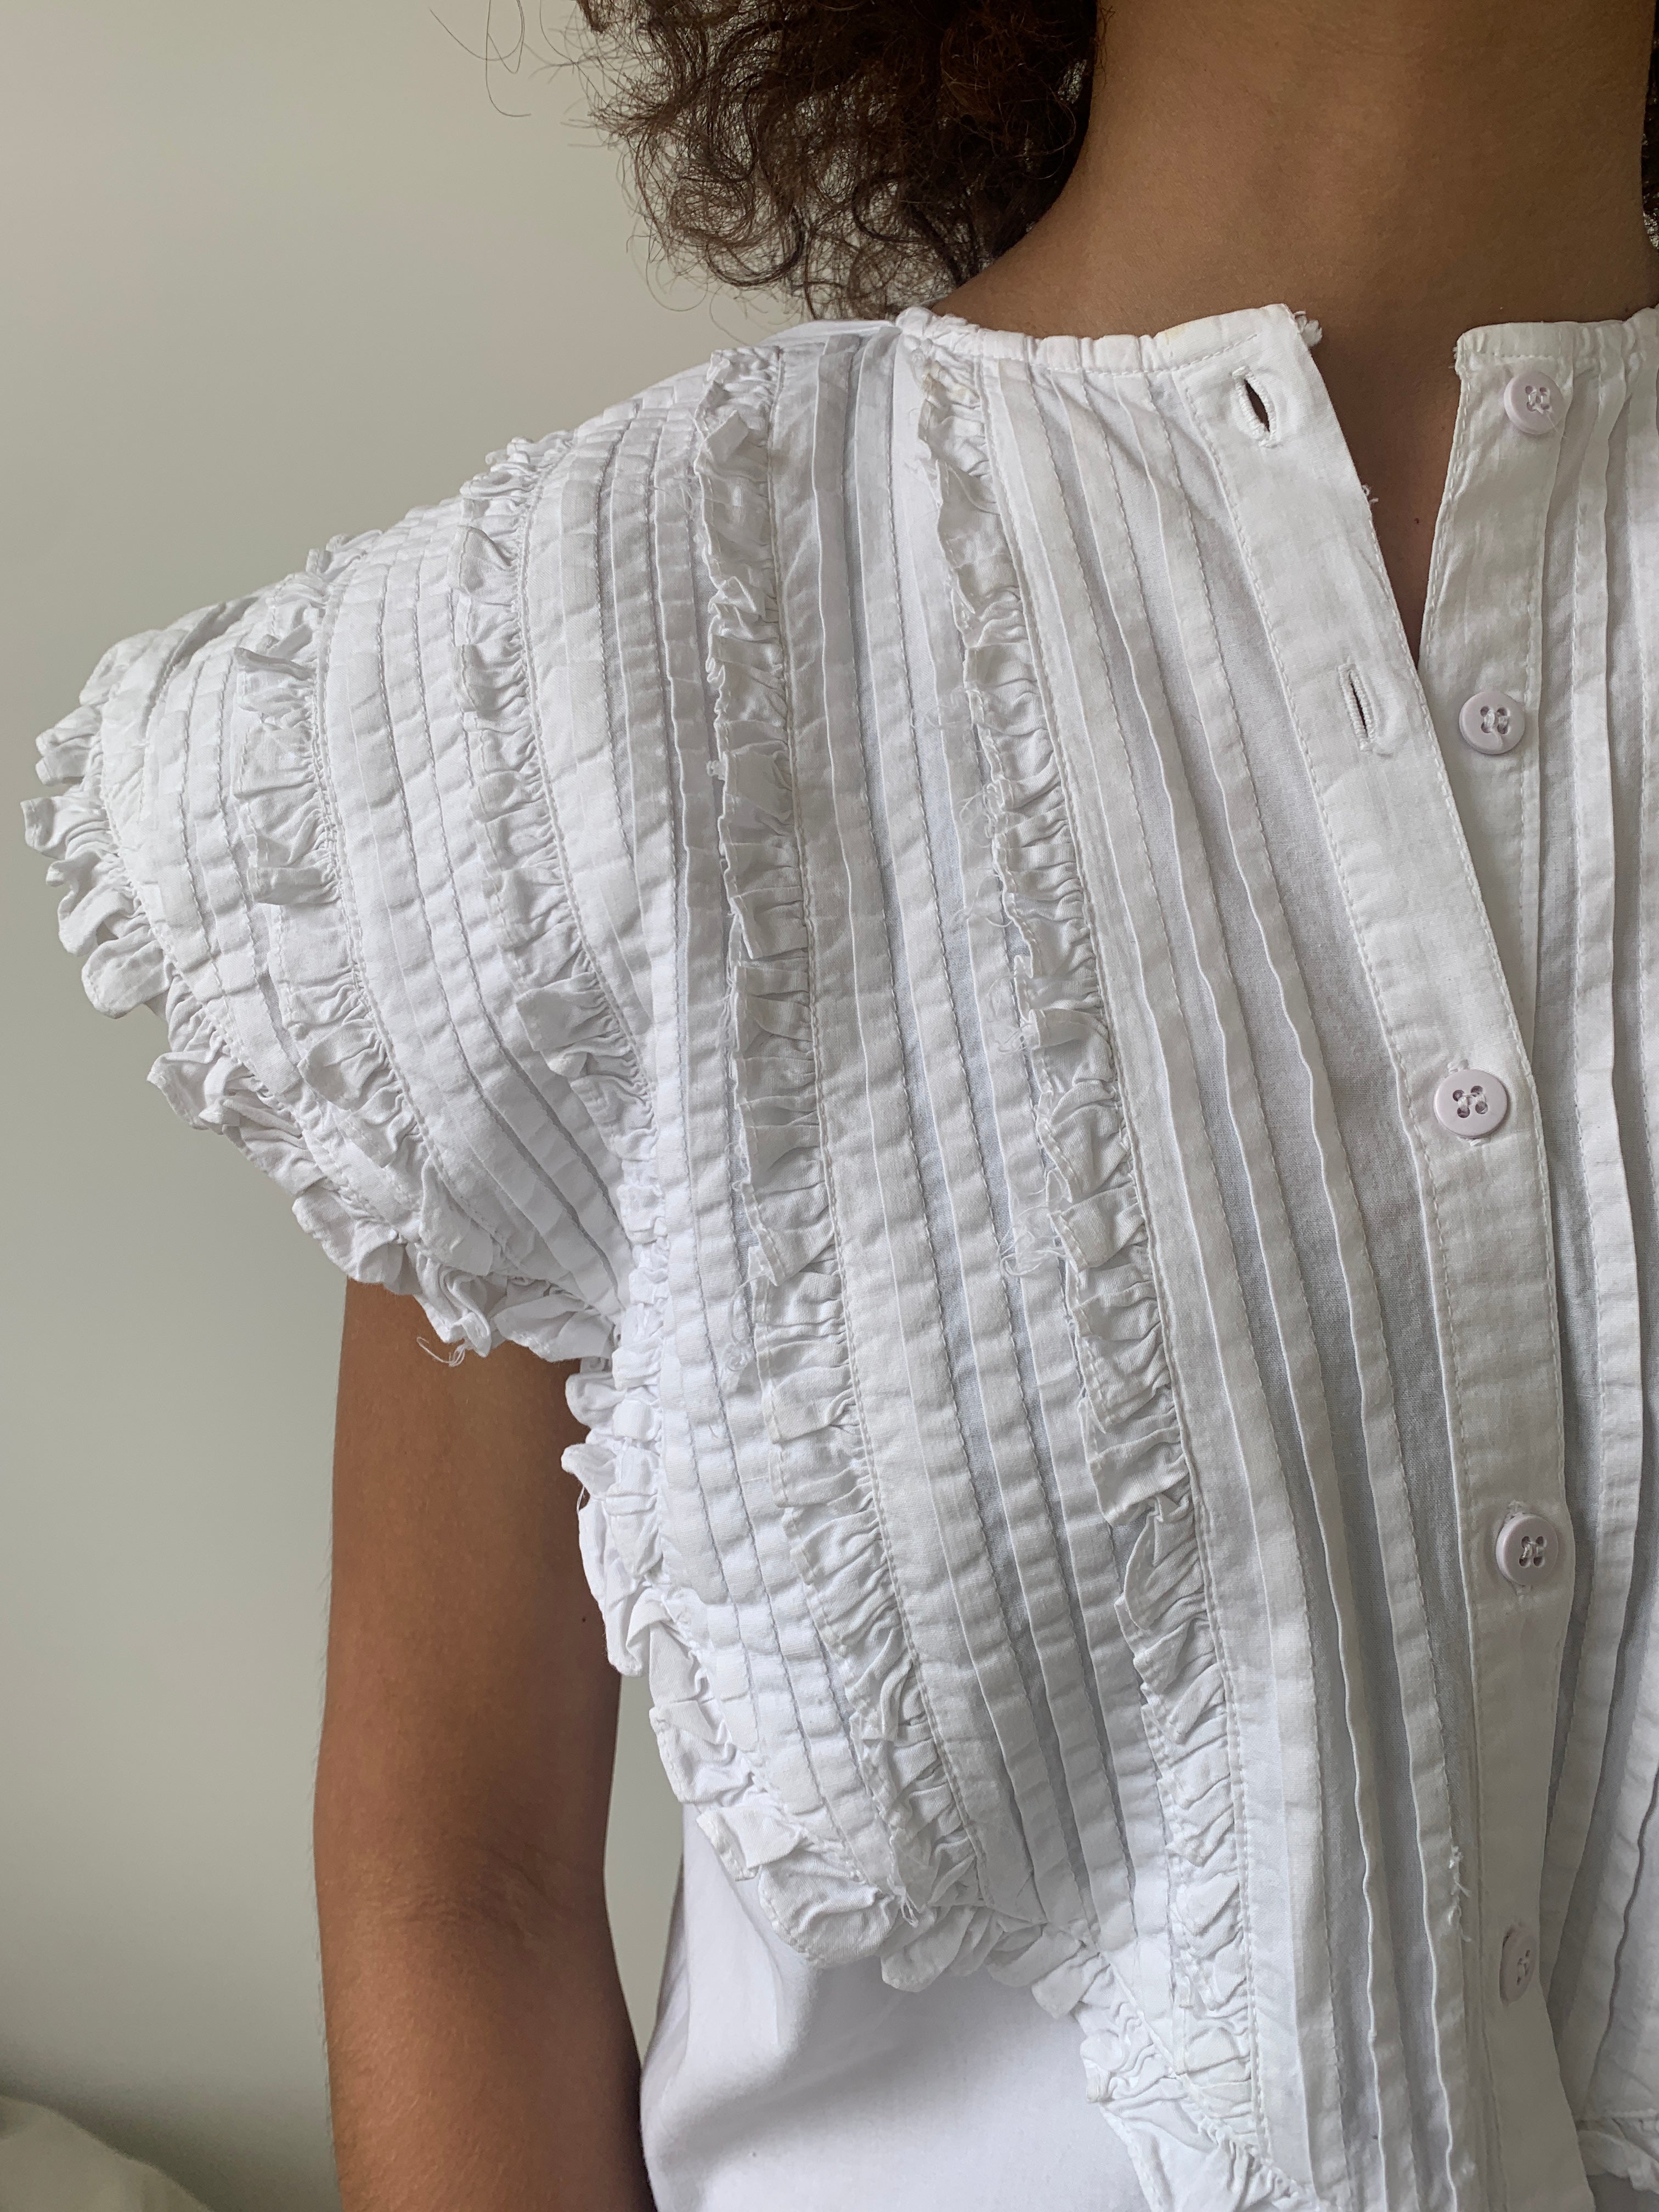 Vintage cotton frill blouse